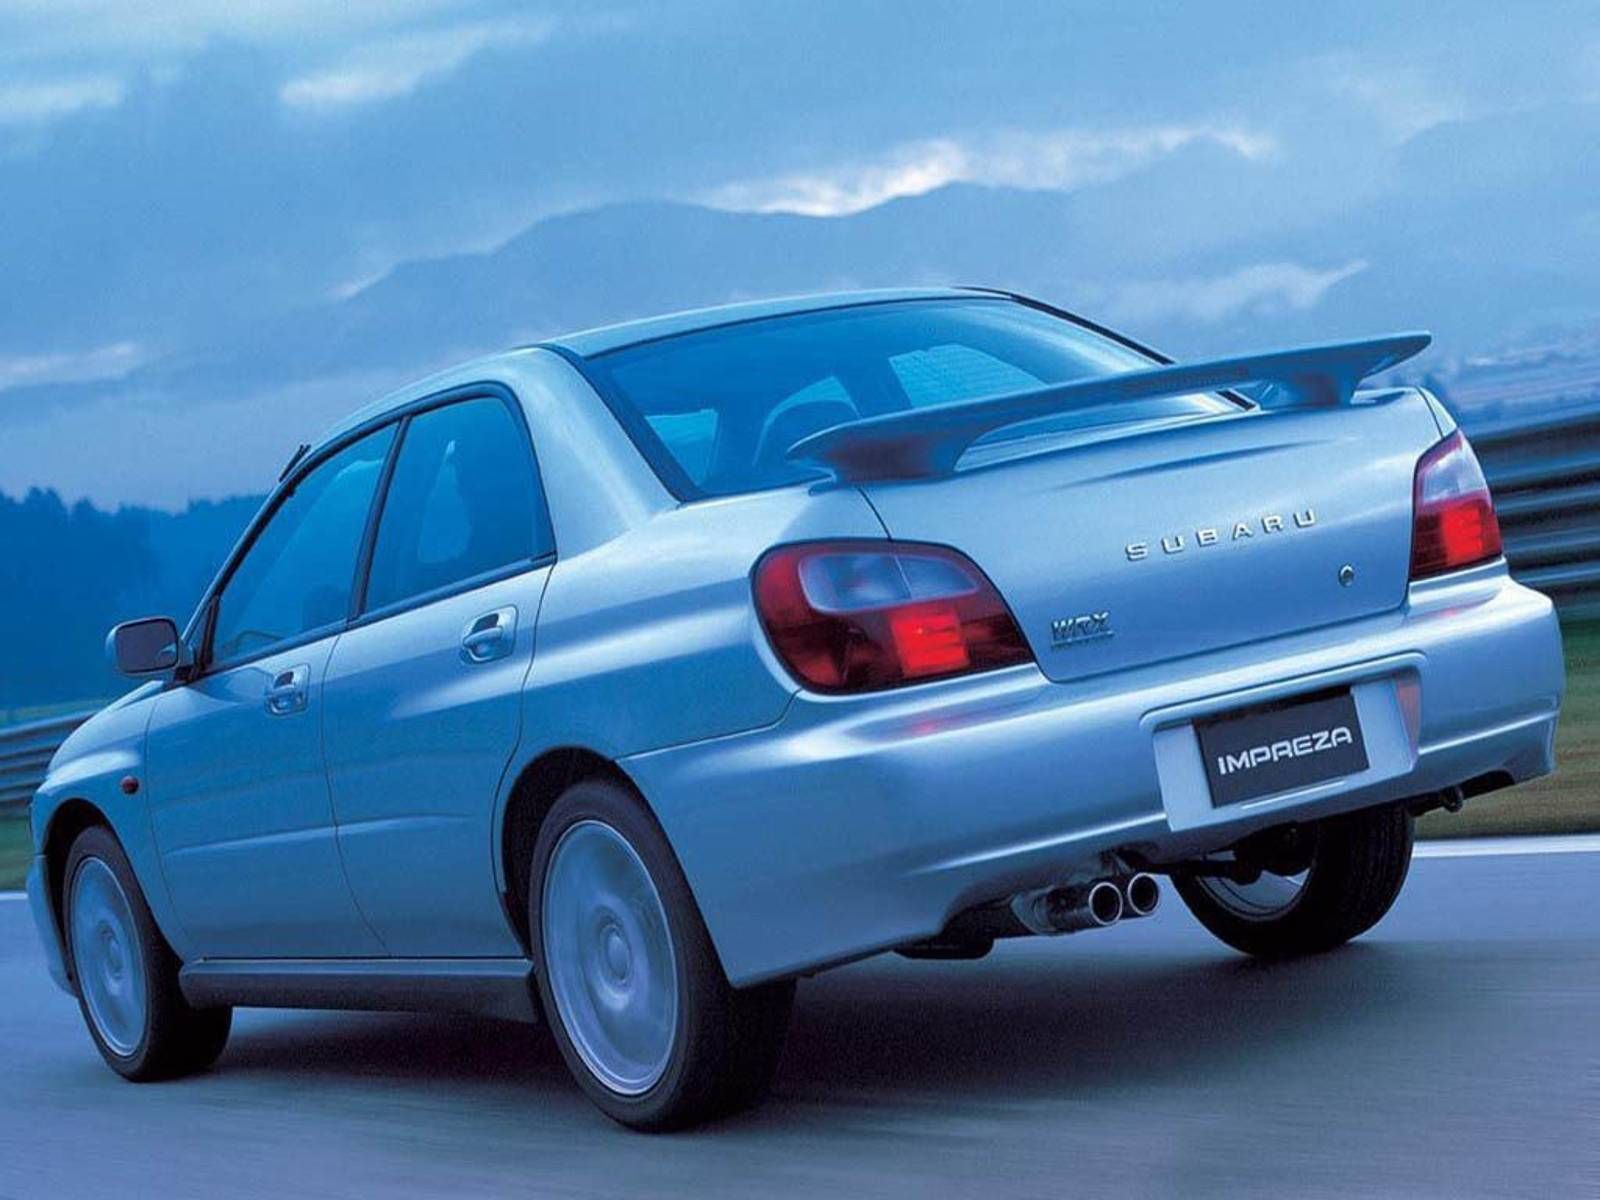 Импреза 2000 год. Subaru Impreza WRX 2000. Subaru Impreza WRX 2002. Subaru Impreza WRX 2000-2002. Impreza WRX 2000.